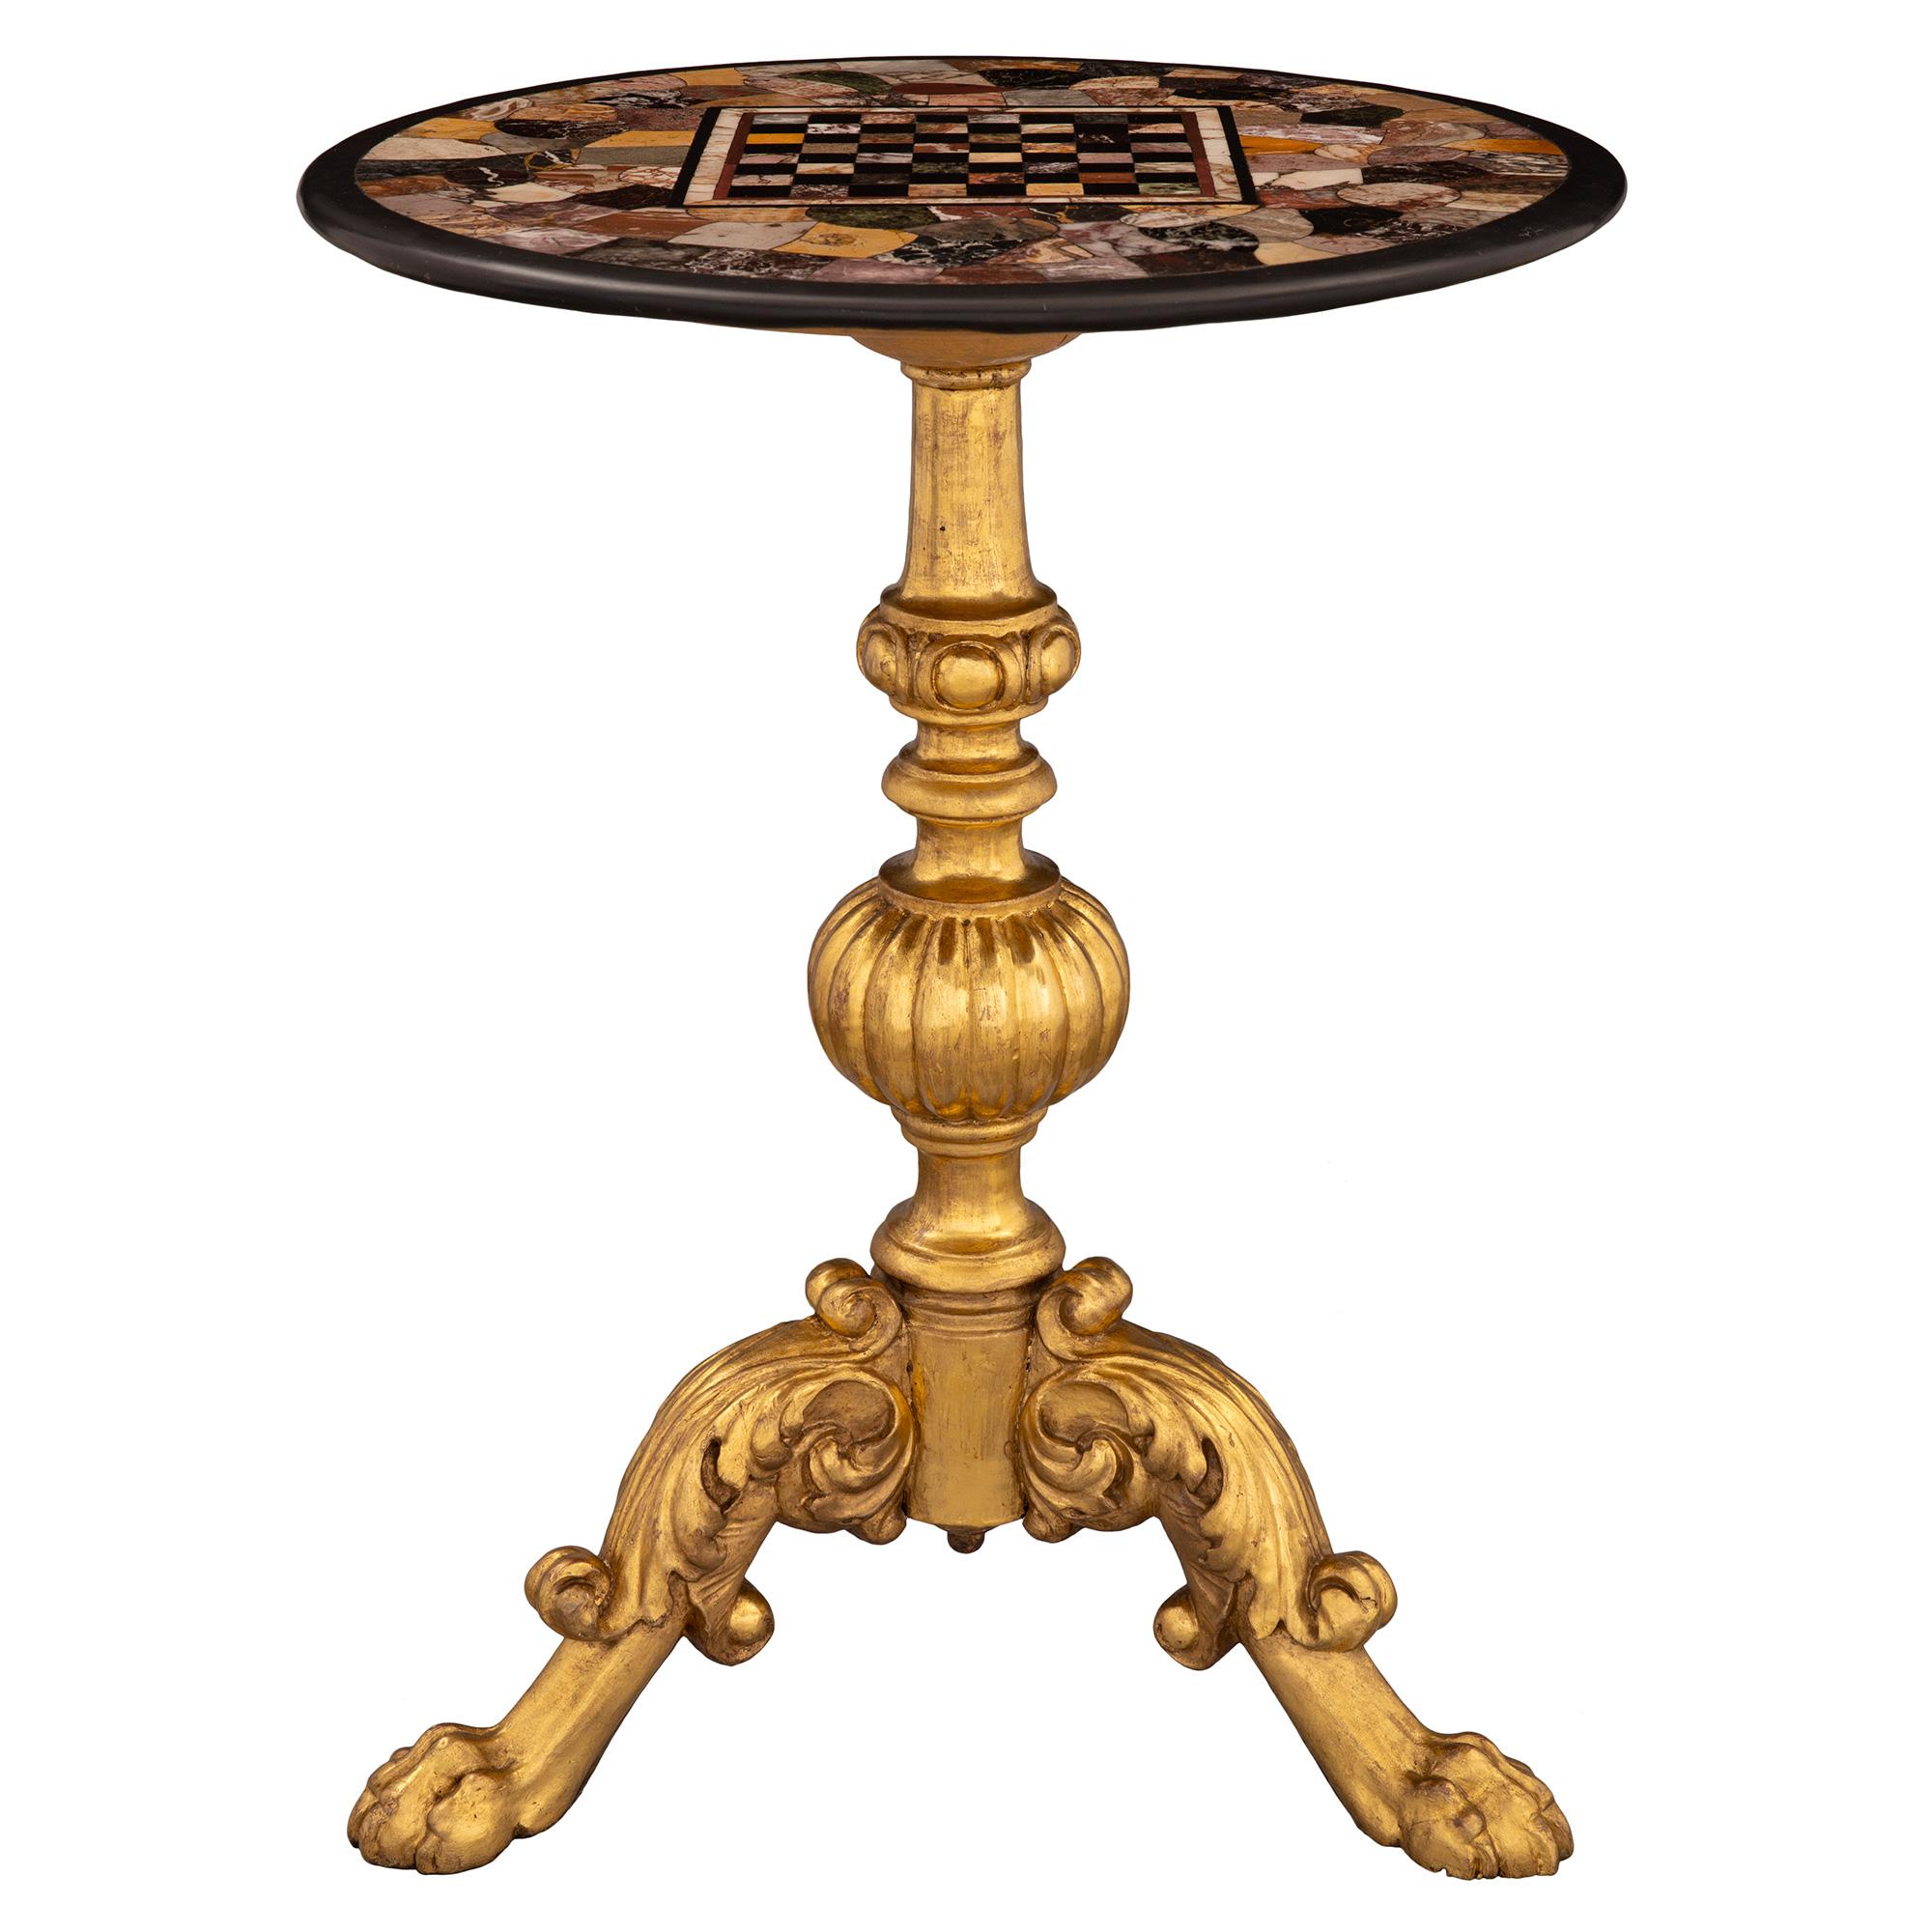 Magnifique table d'appoint en bois doré et marbre Pietra Dura du 19e siècle, très décorative. La table est surélevée par une superbe base en bois doré richement sculpté avec trois pieds finement chantournés, chacun décoré de beaux pieds en patte et